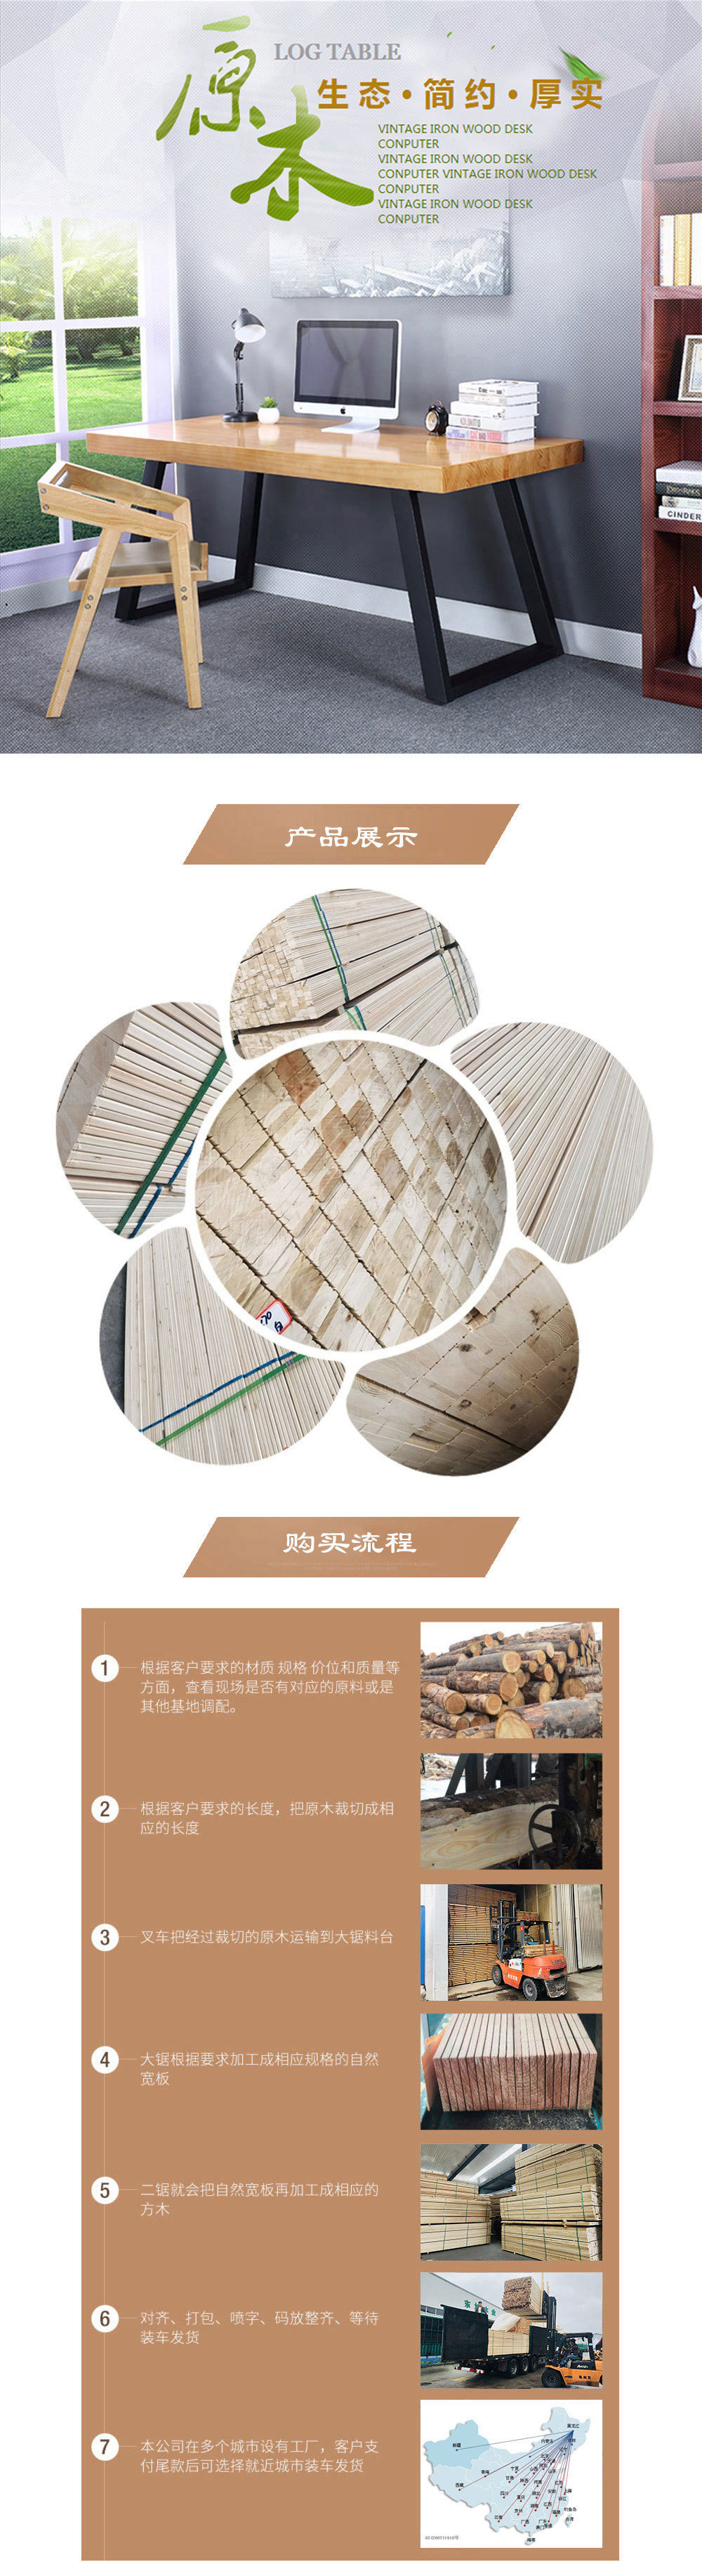 哈尔滨市永强三友木材干燥设备有限公司